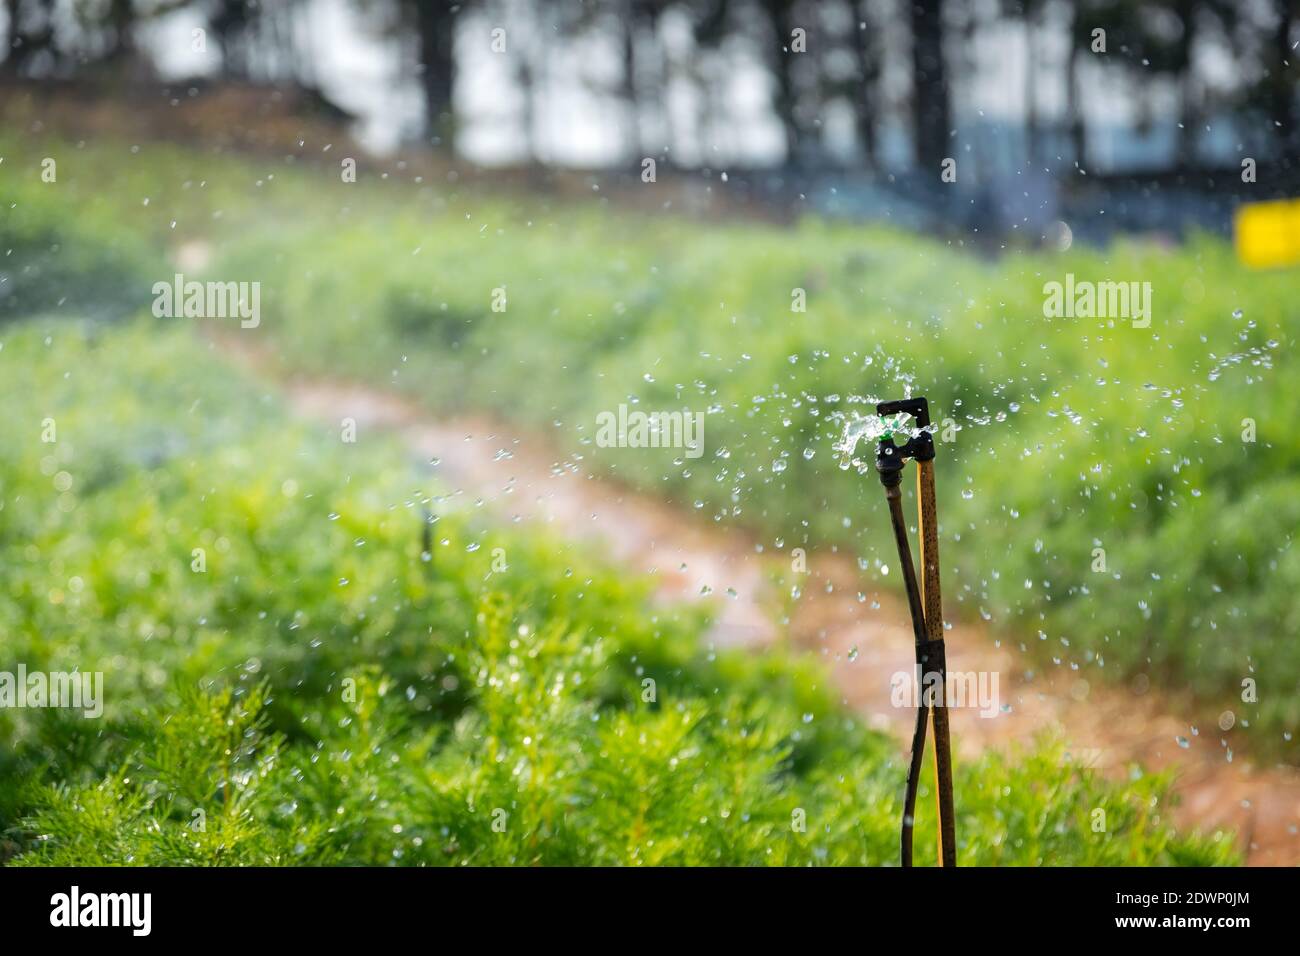 Nahaufnahme Tropfen Wasser spritzte aus Sprinkle für die Bewässerung von Pflanzen. Stockfoto